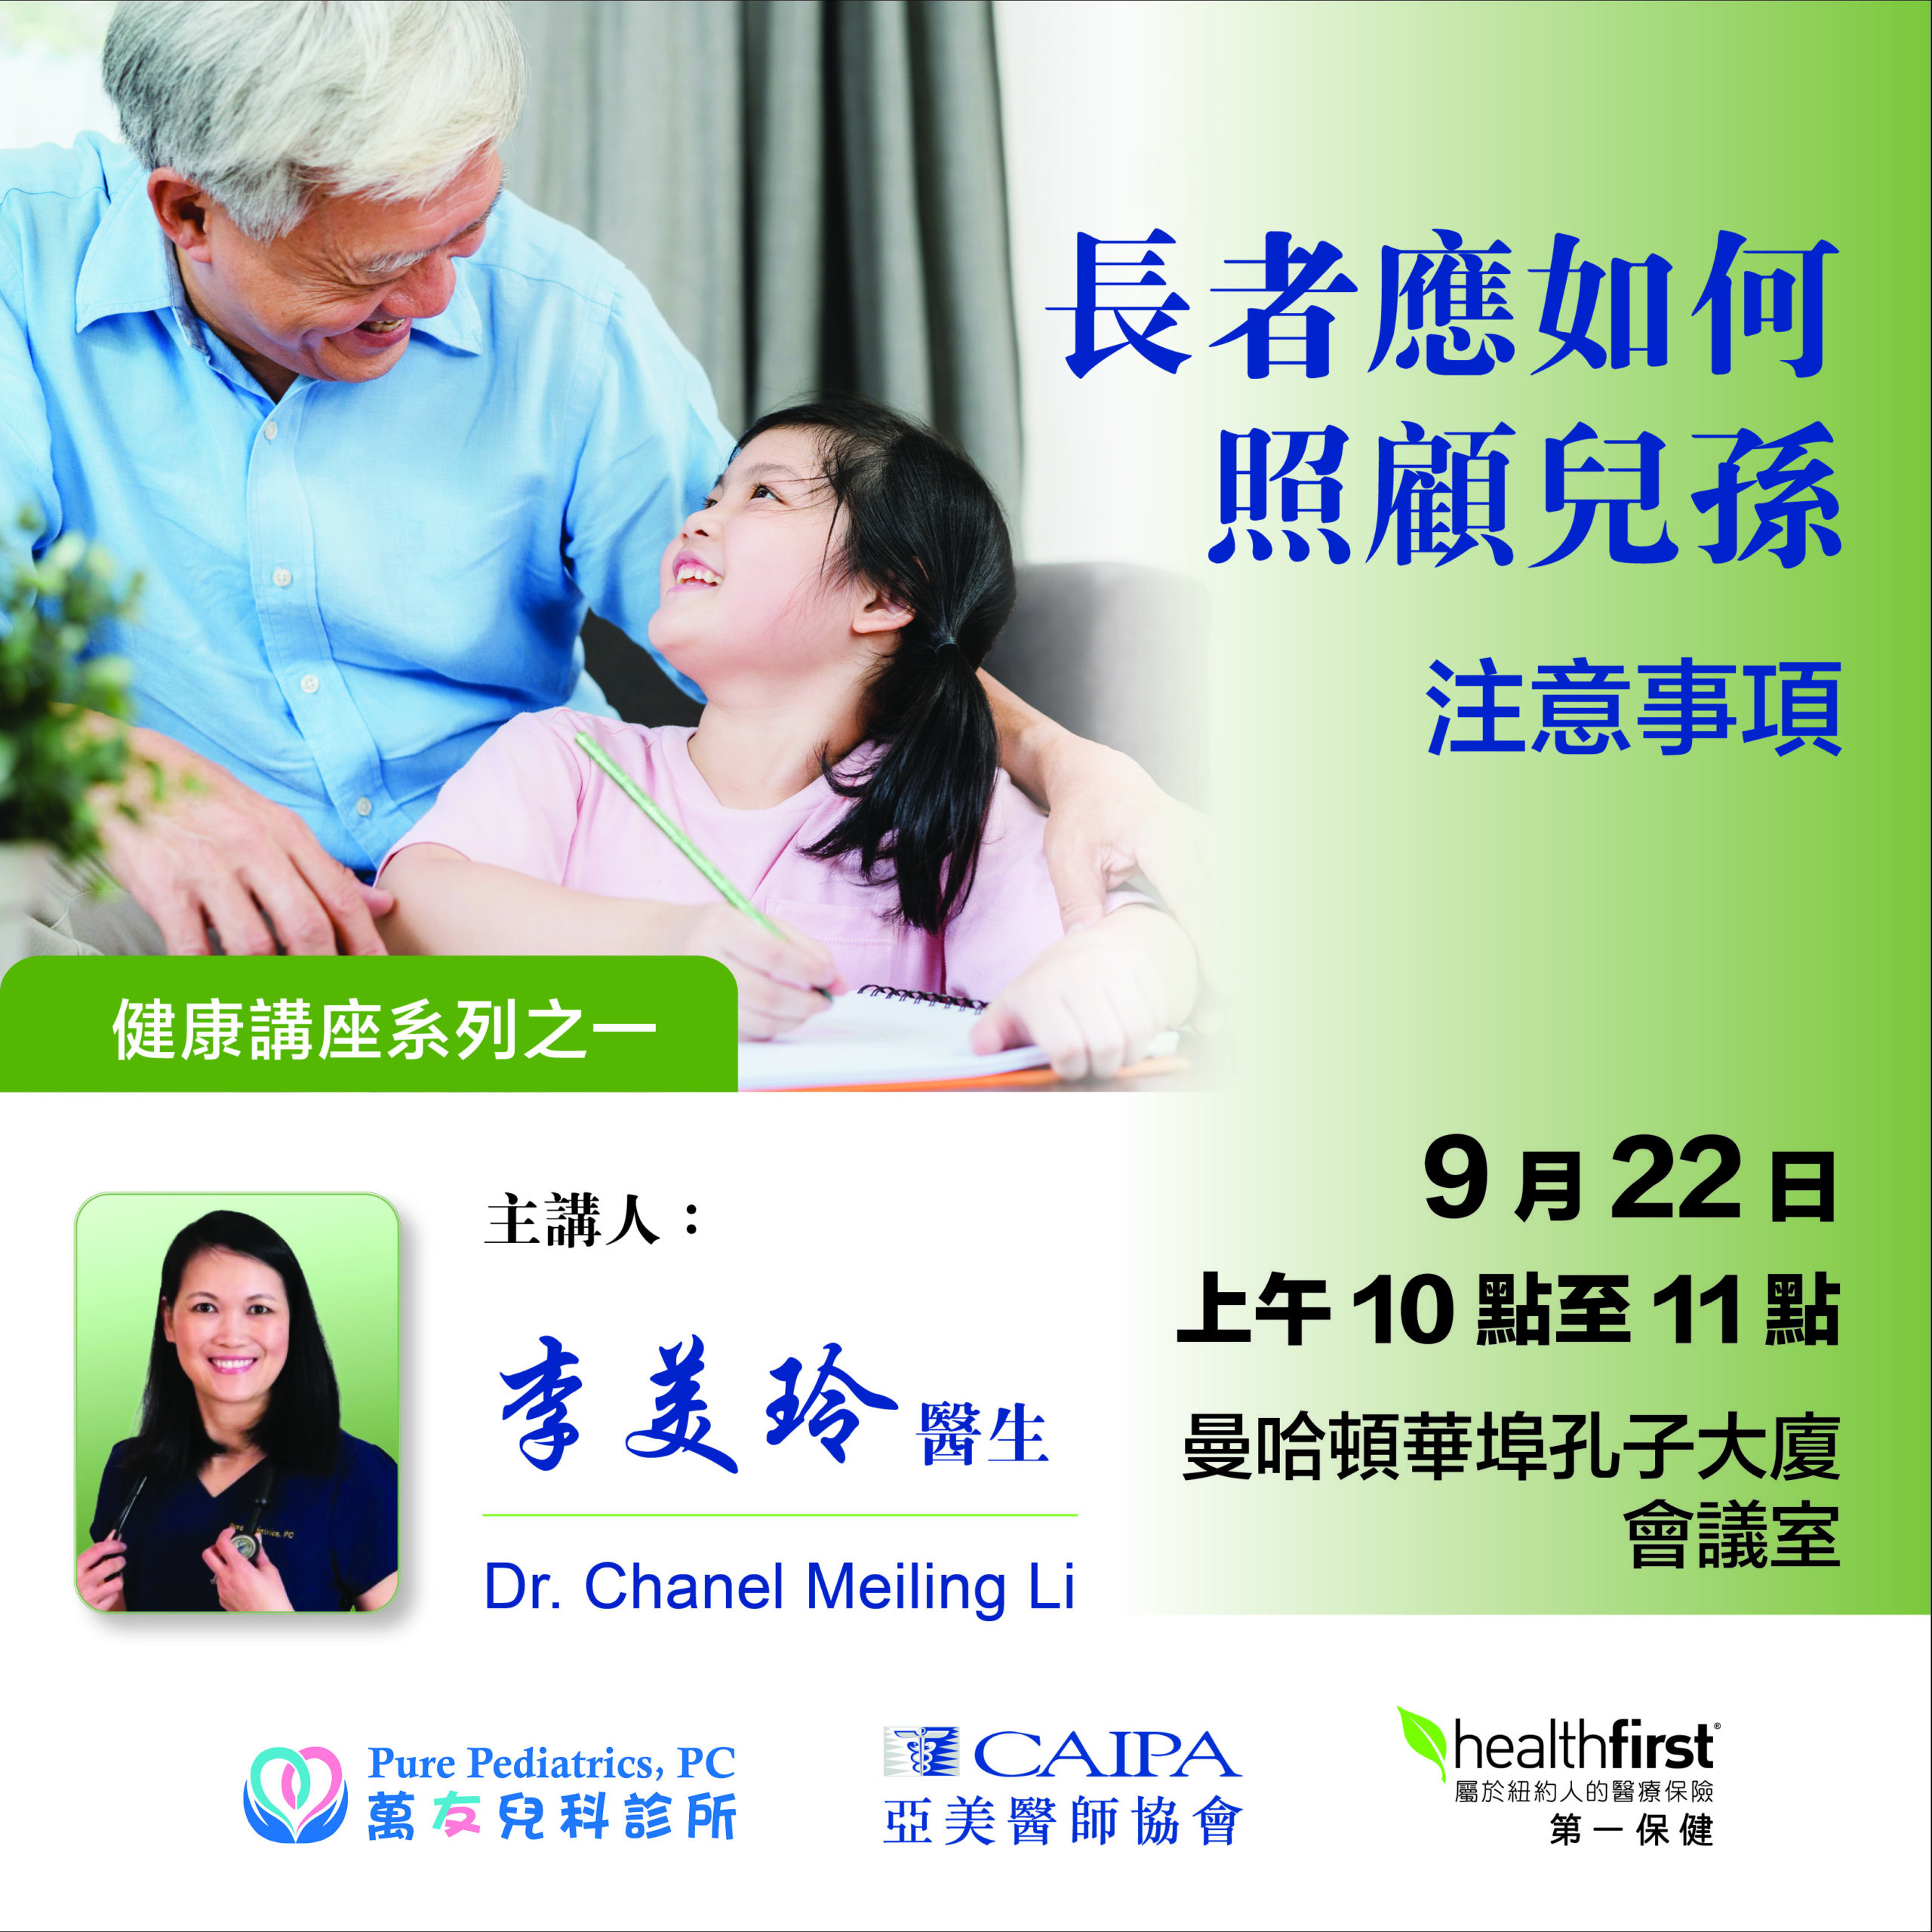 CAIPA and Healthfirst Health Seminar 9/22